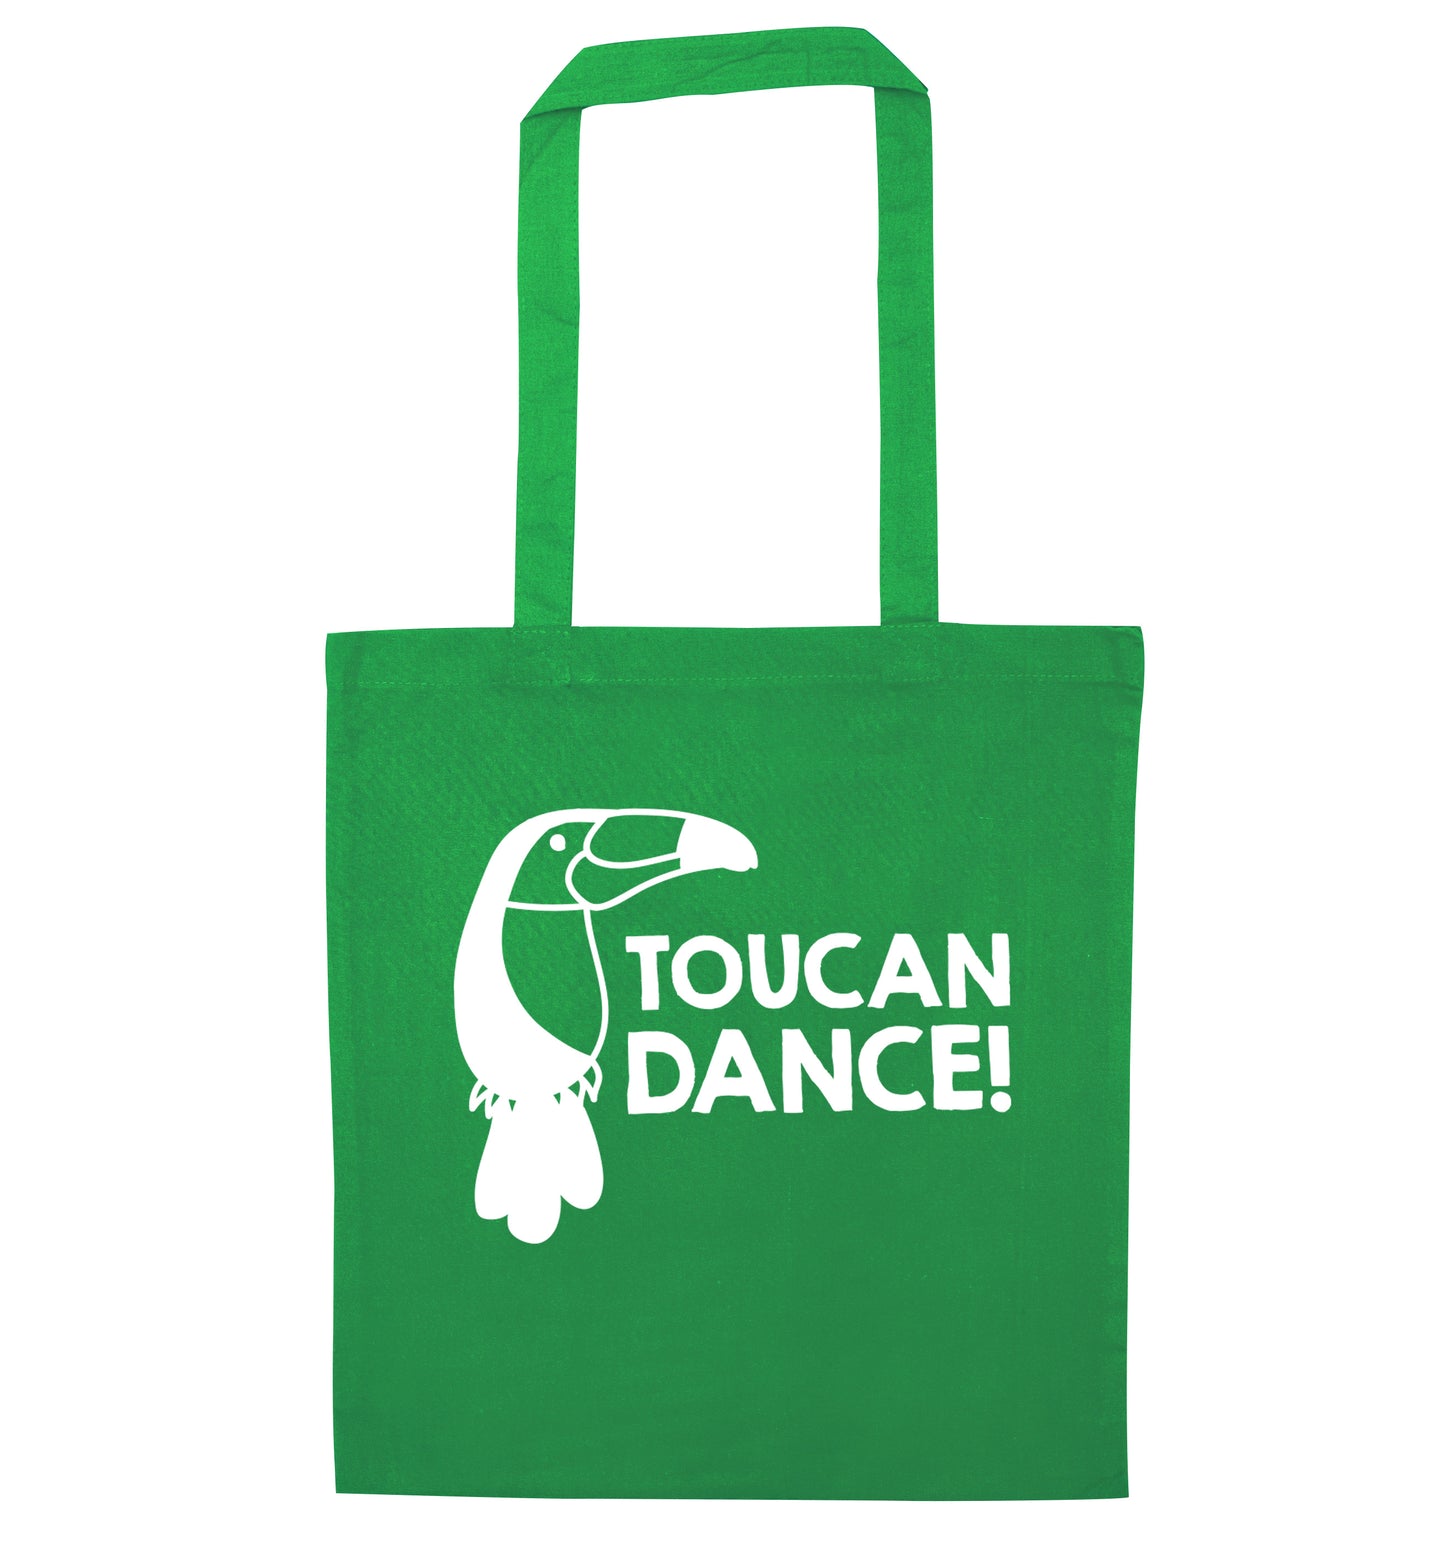 Toucan dance green tote bag